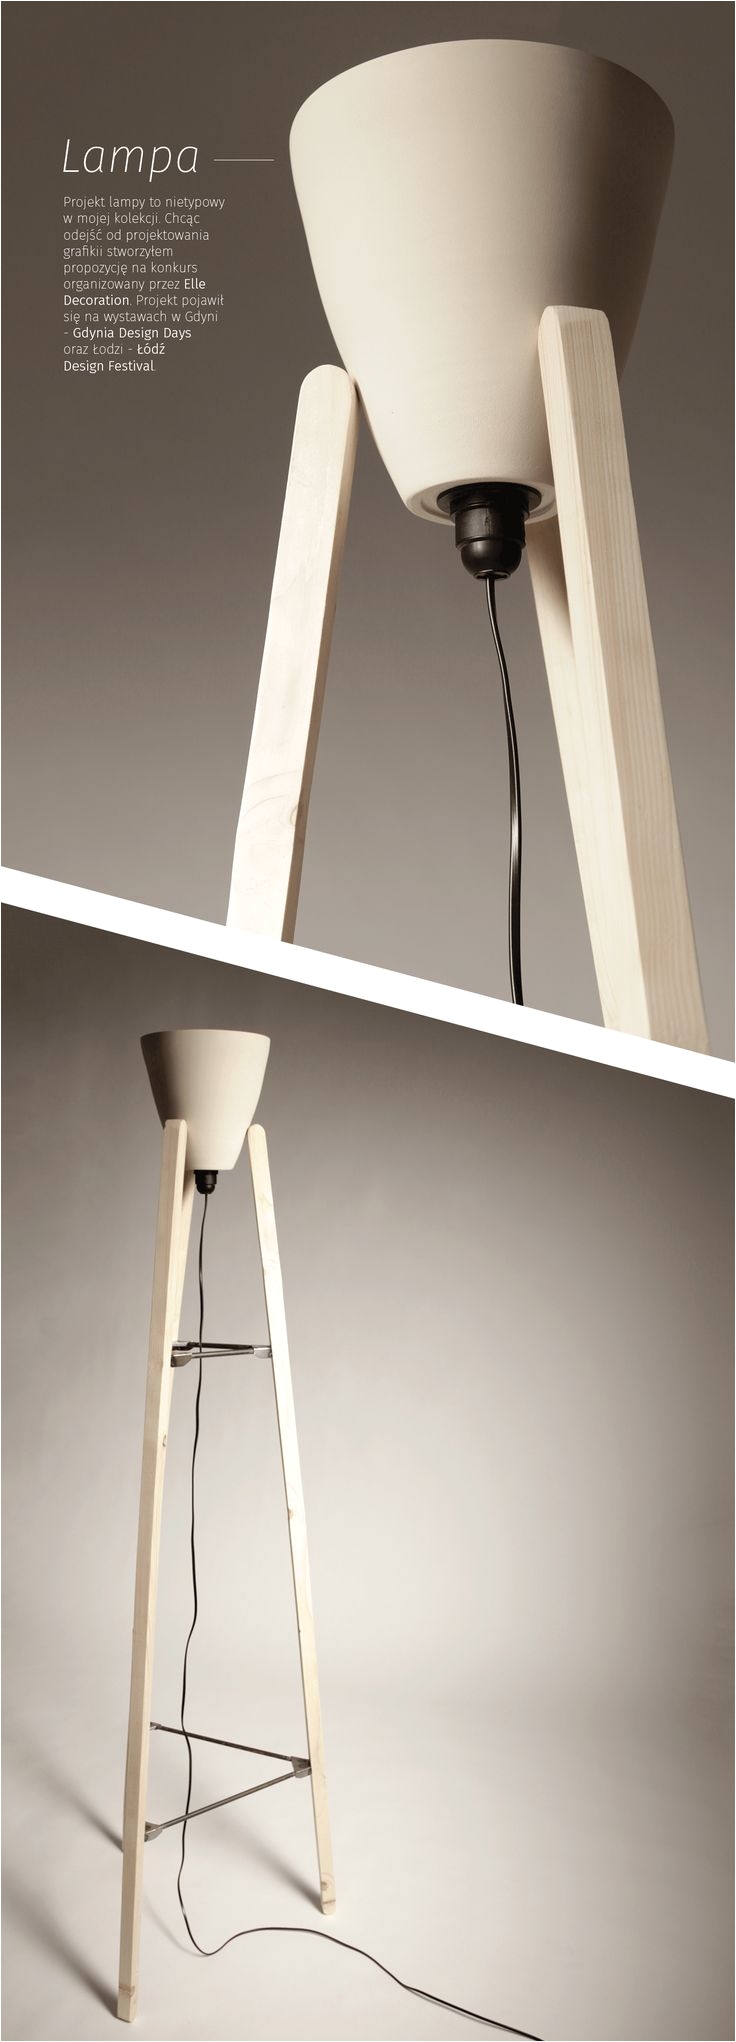 lampa pojawiaa sia na wystawach podczas gdynia design days oraz aa³dao design festival w ramach wspa³apracy